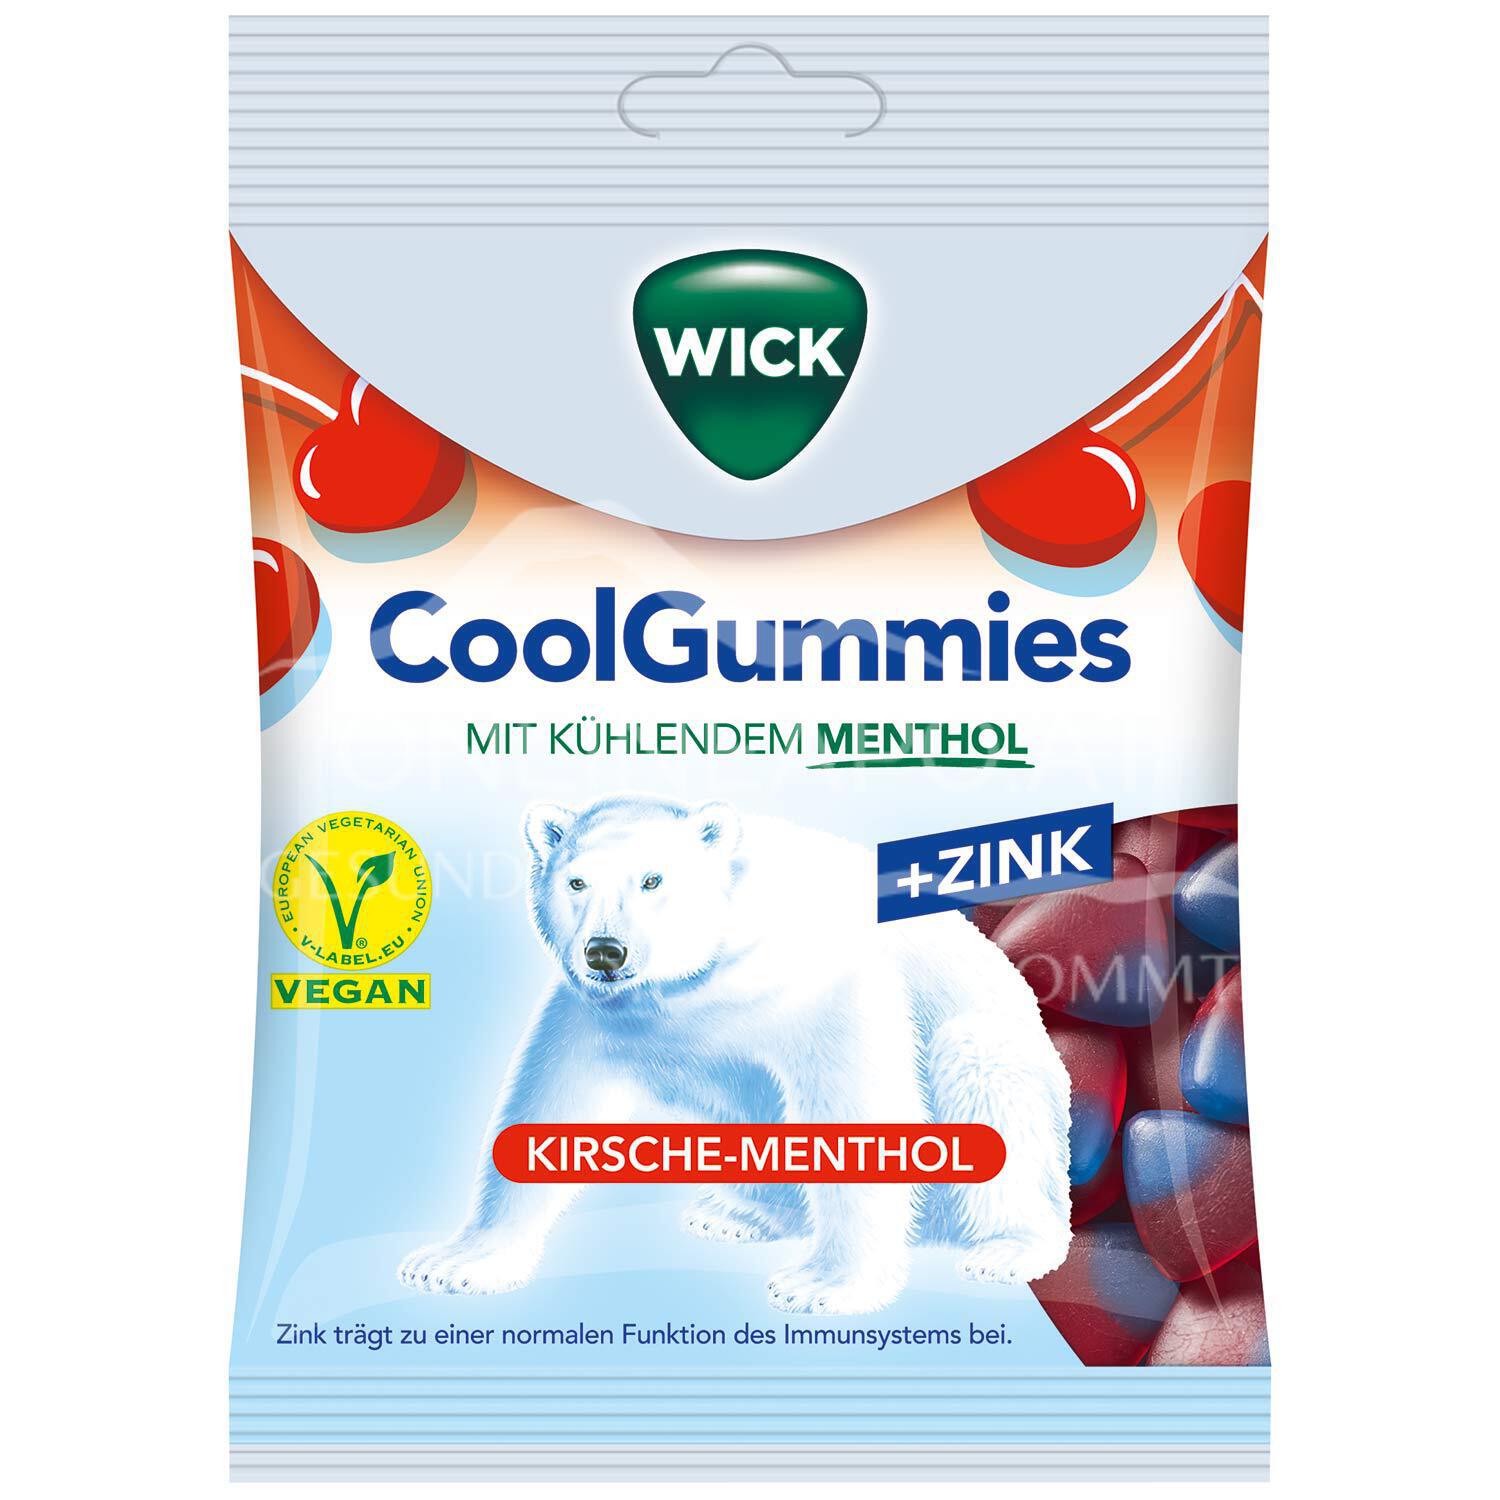 WICK CoolGummies Kirsche Menthol +Zink